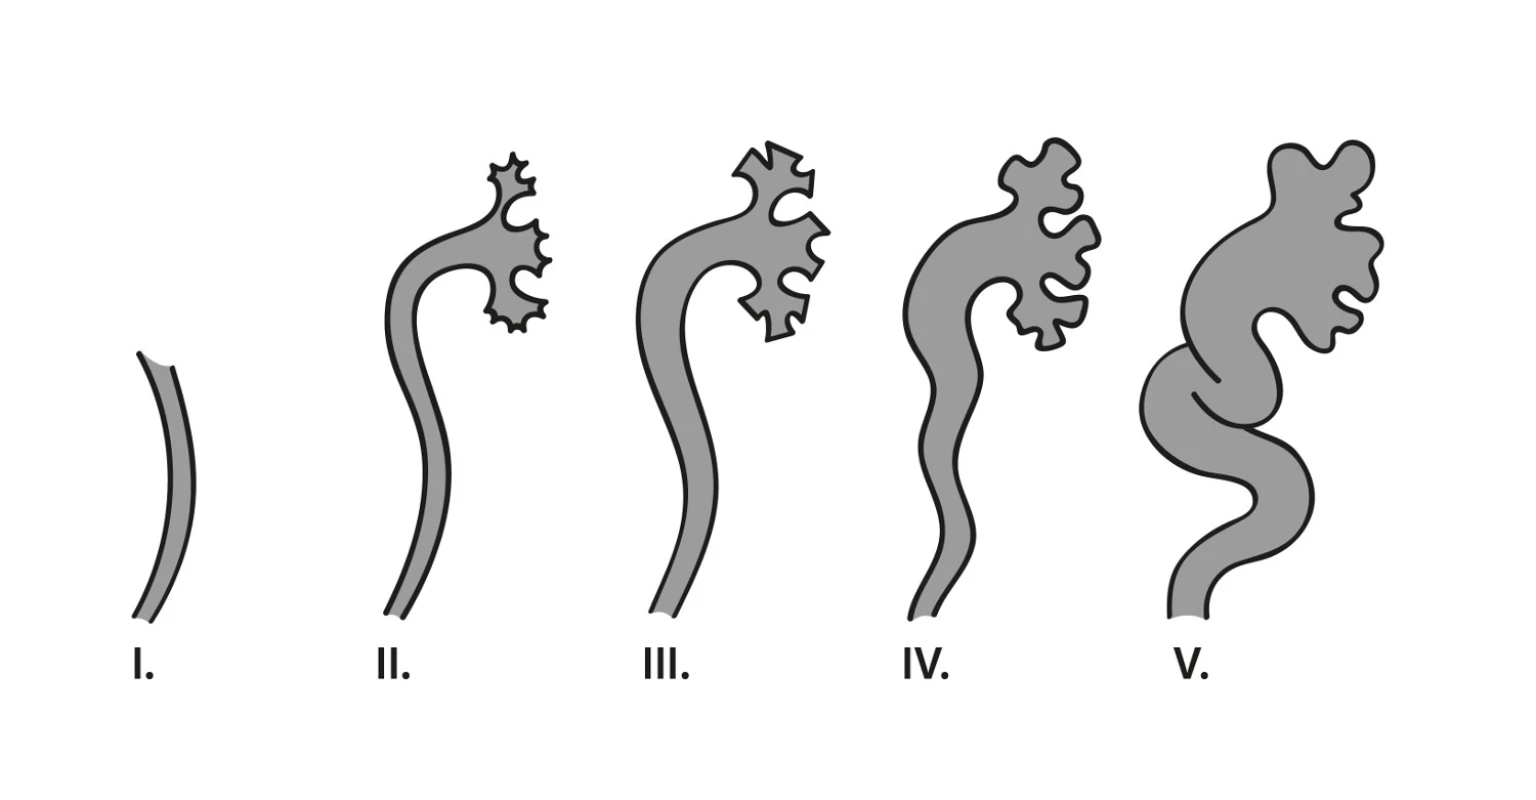 Klasifikace VUR dle závažnosti podle The International classification of vesicoureteral reflux (obrázek podle předlohy vytvořila MUDr. Lucie Gonsorčíková, Ph.D.) (1).